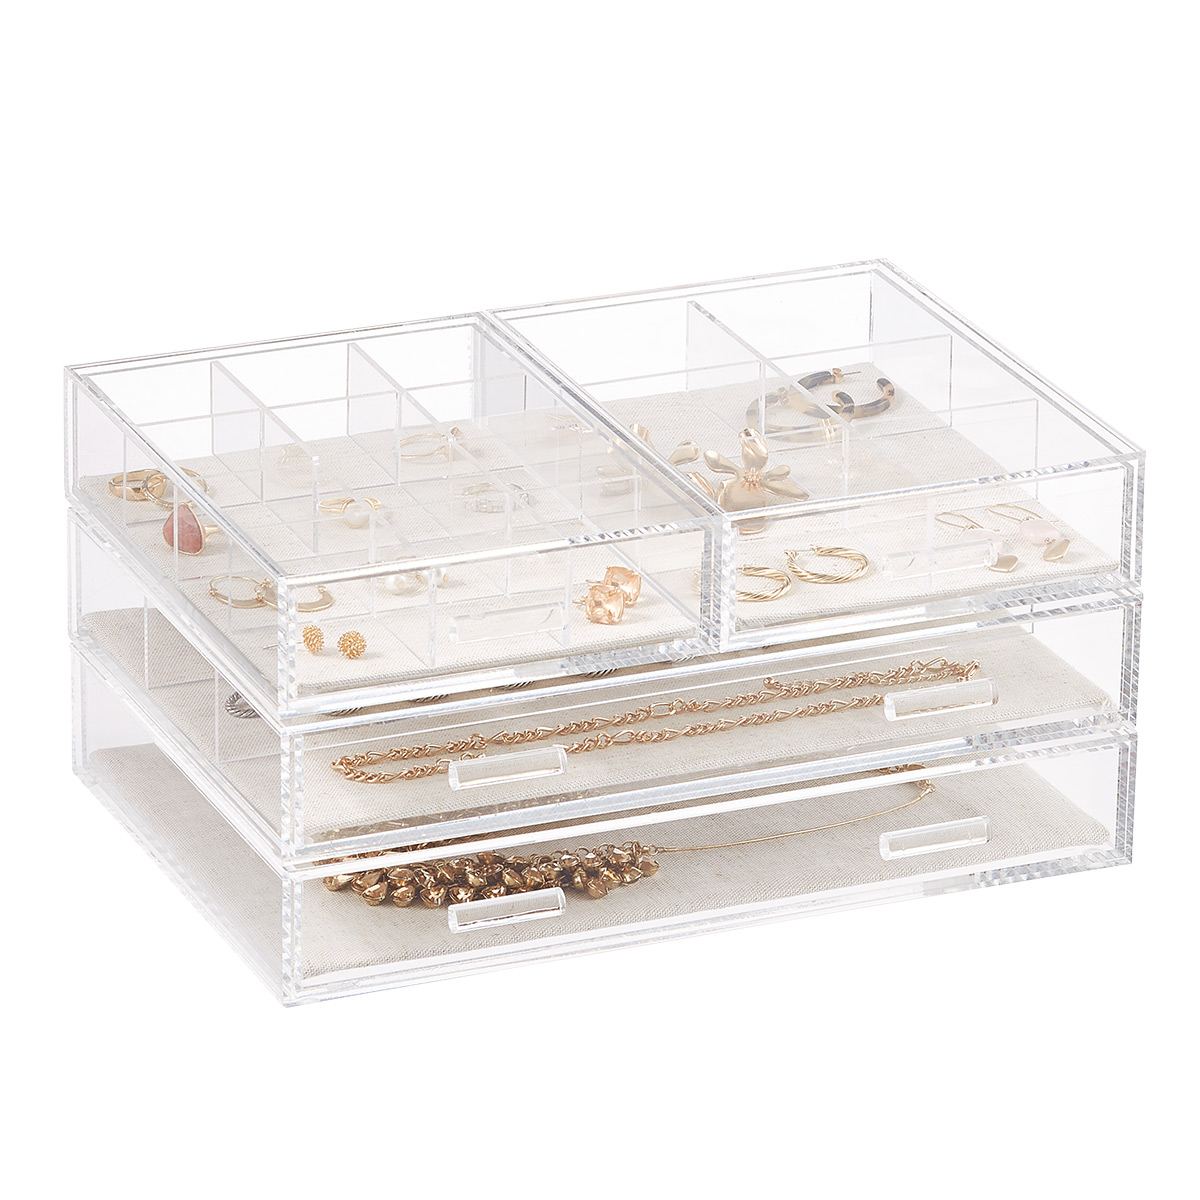 Acrylic Jewelry Organizer Box Women – 3 Drawers Clear Storage Case